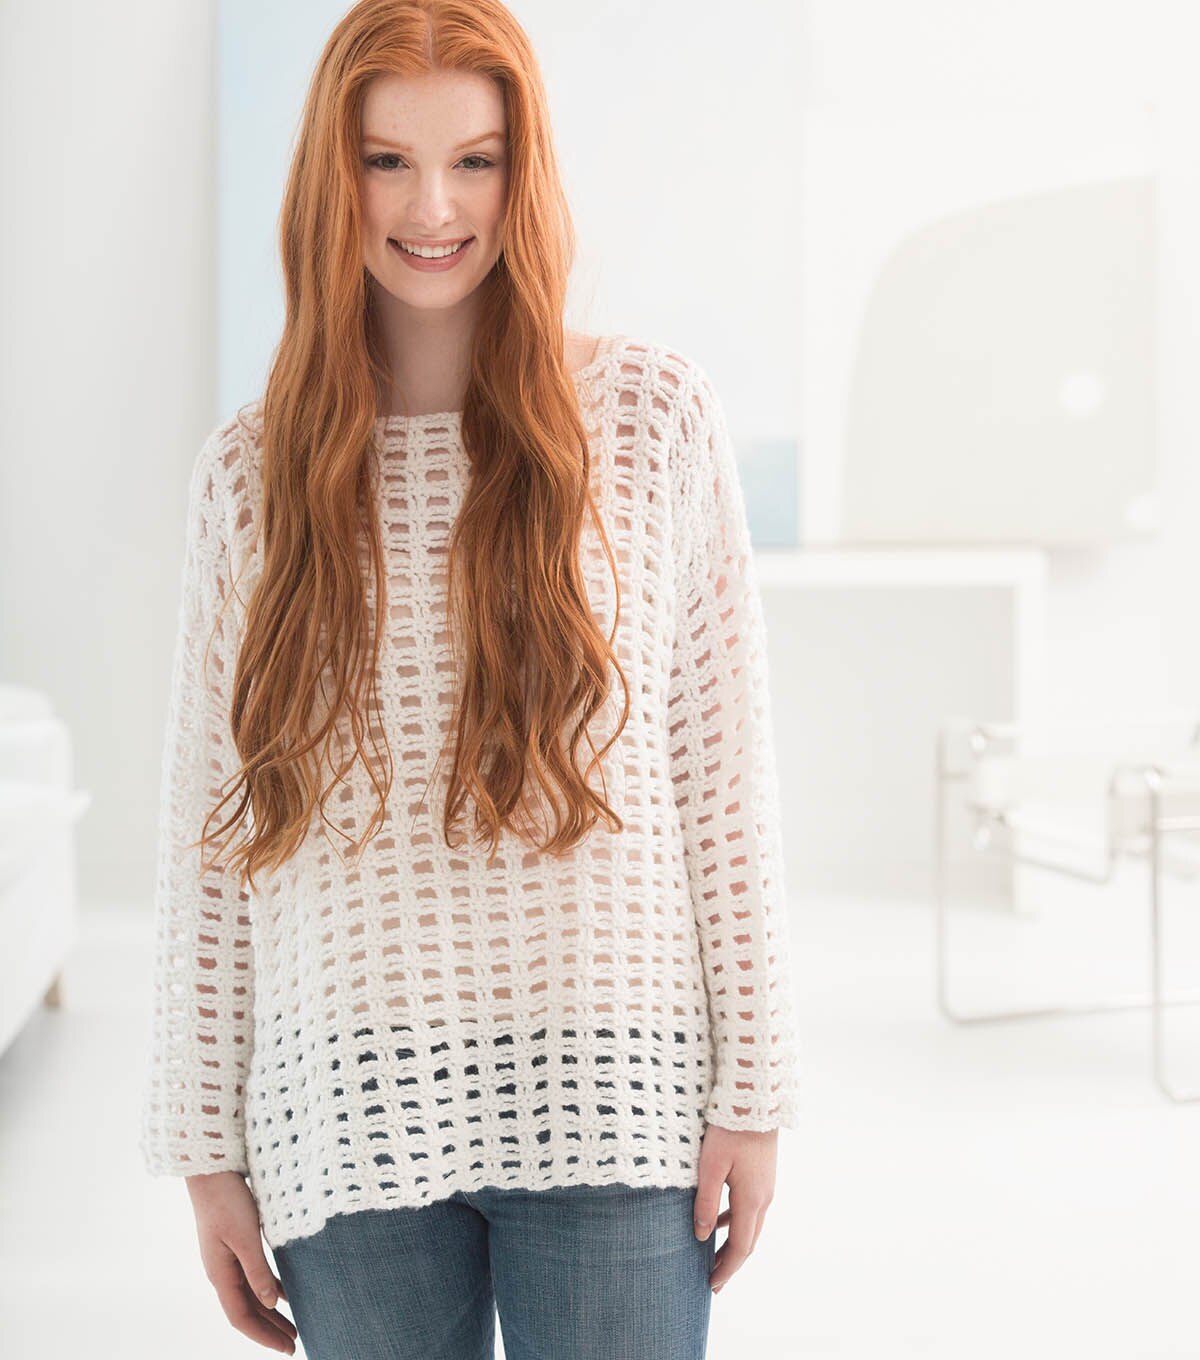 How To Make Crochet An Easy Mesh Pullover Online | JOANN